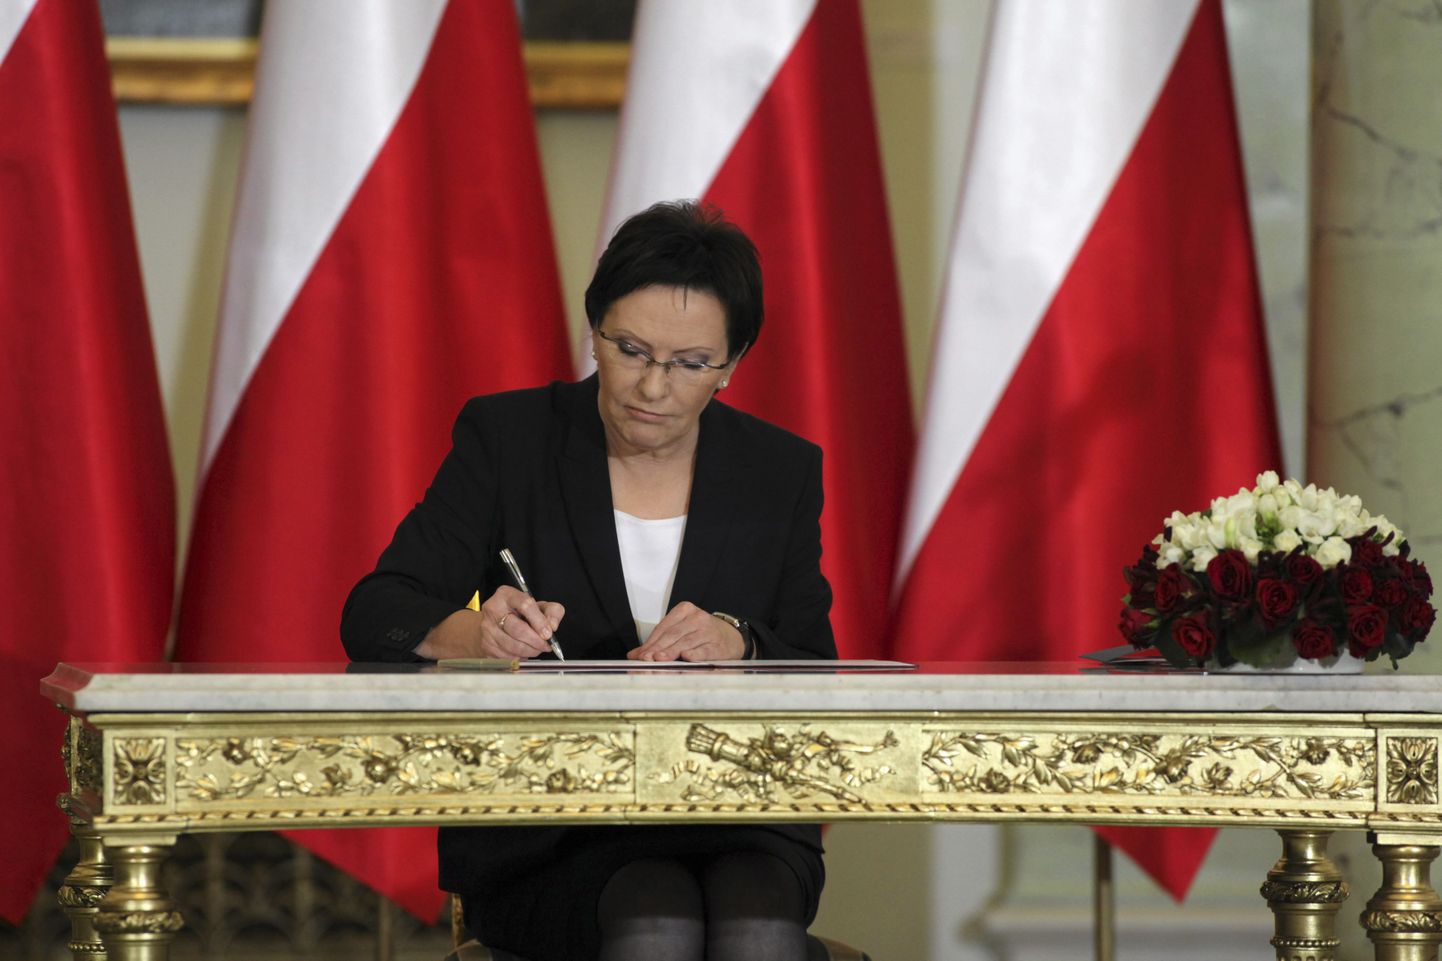 Poola sai täna ametlikult uue valitsuse. Peaminister Ewa Kopacz allkirjastas ka vastavad dokumendid.